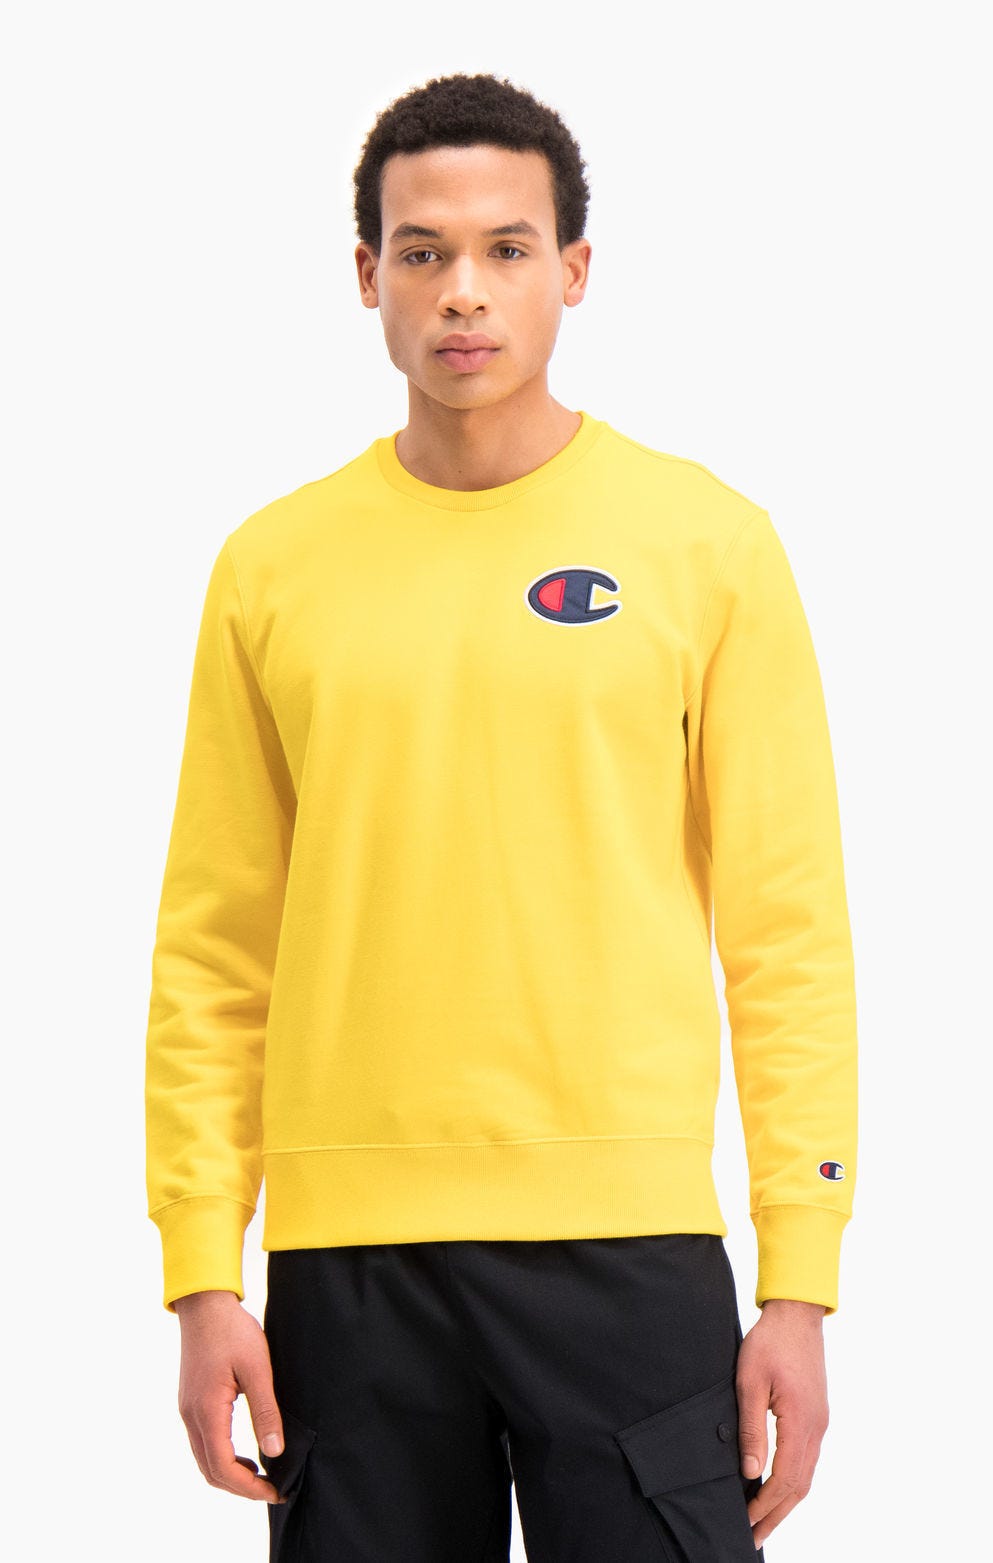 Sweatshirt en coton bouclé à logo C en satin